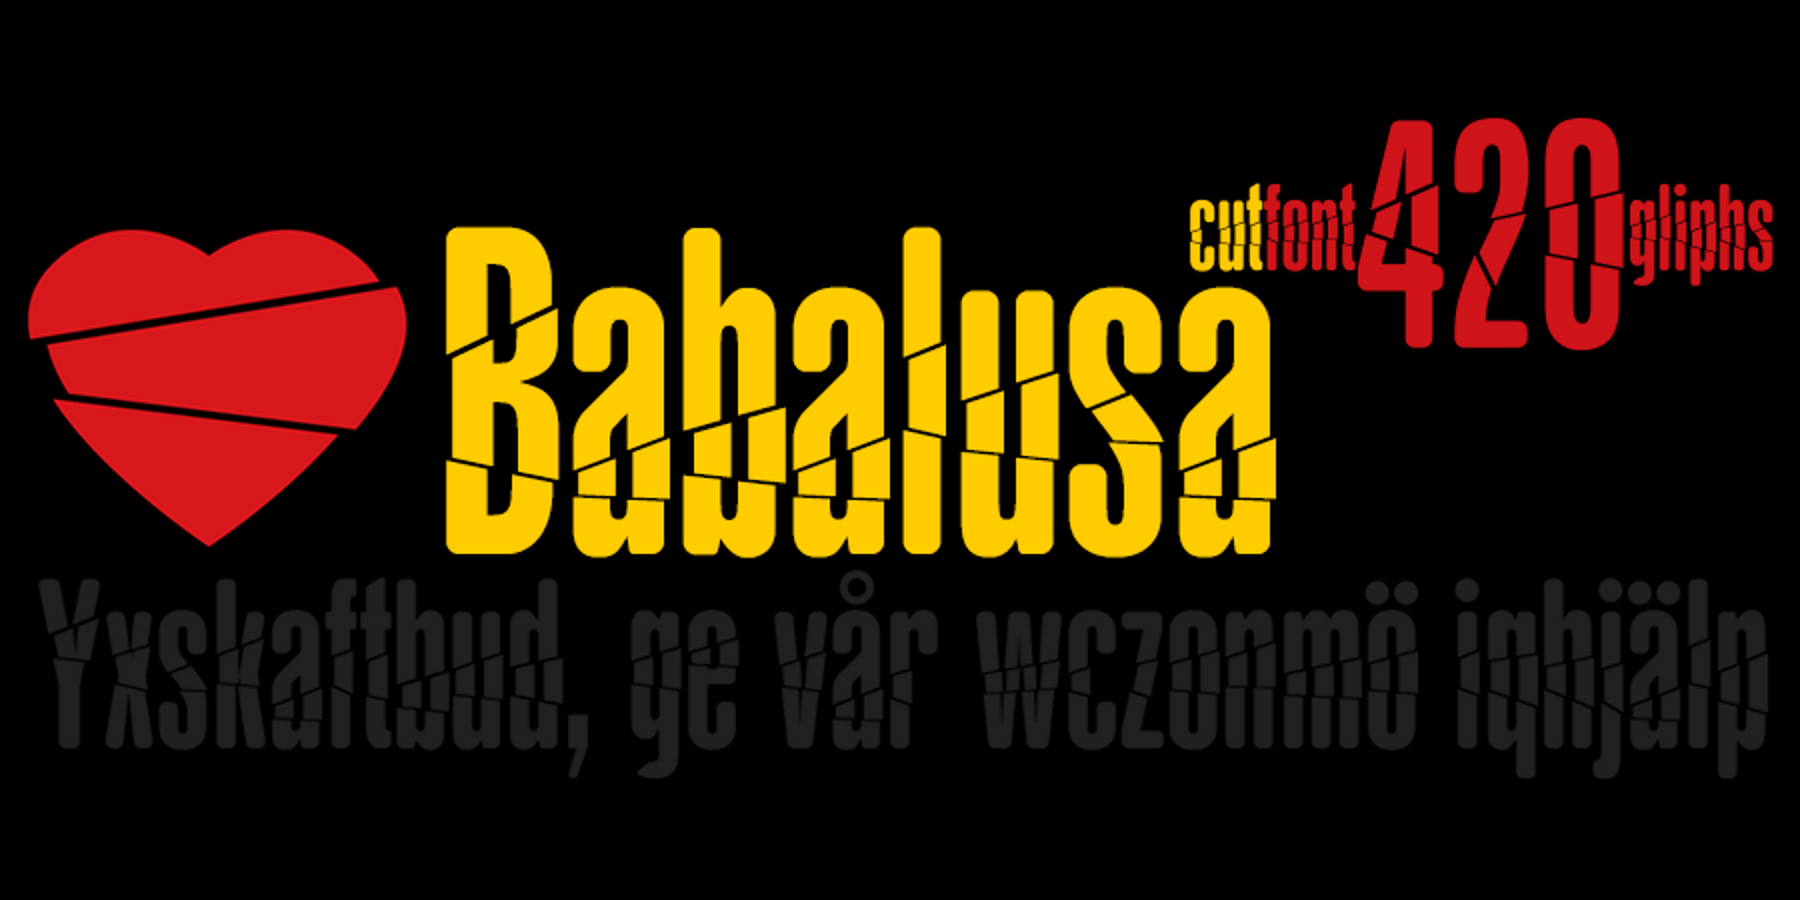 Babalusa Cut